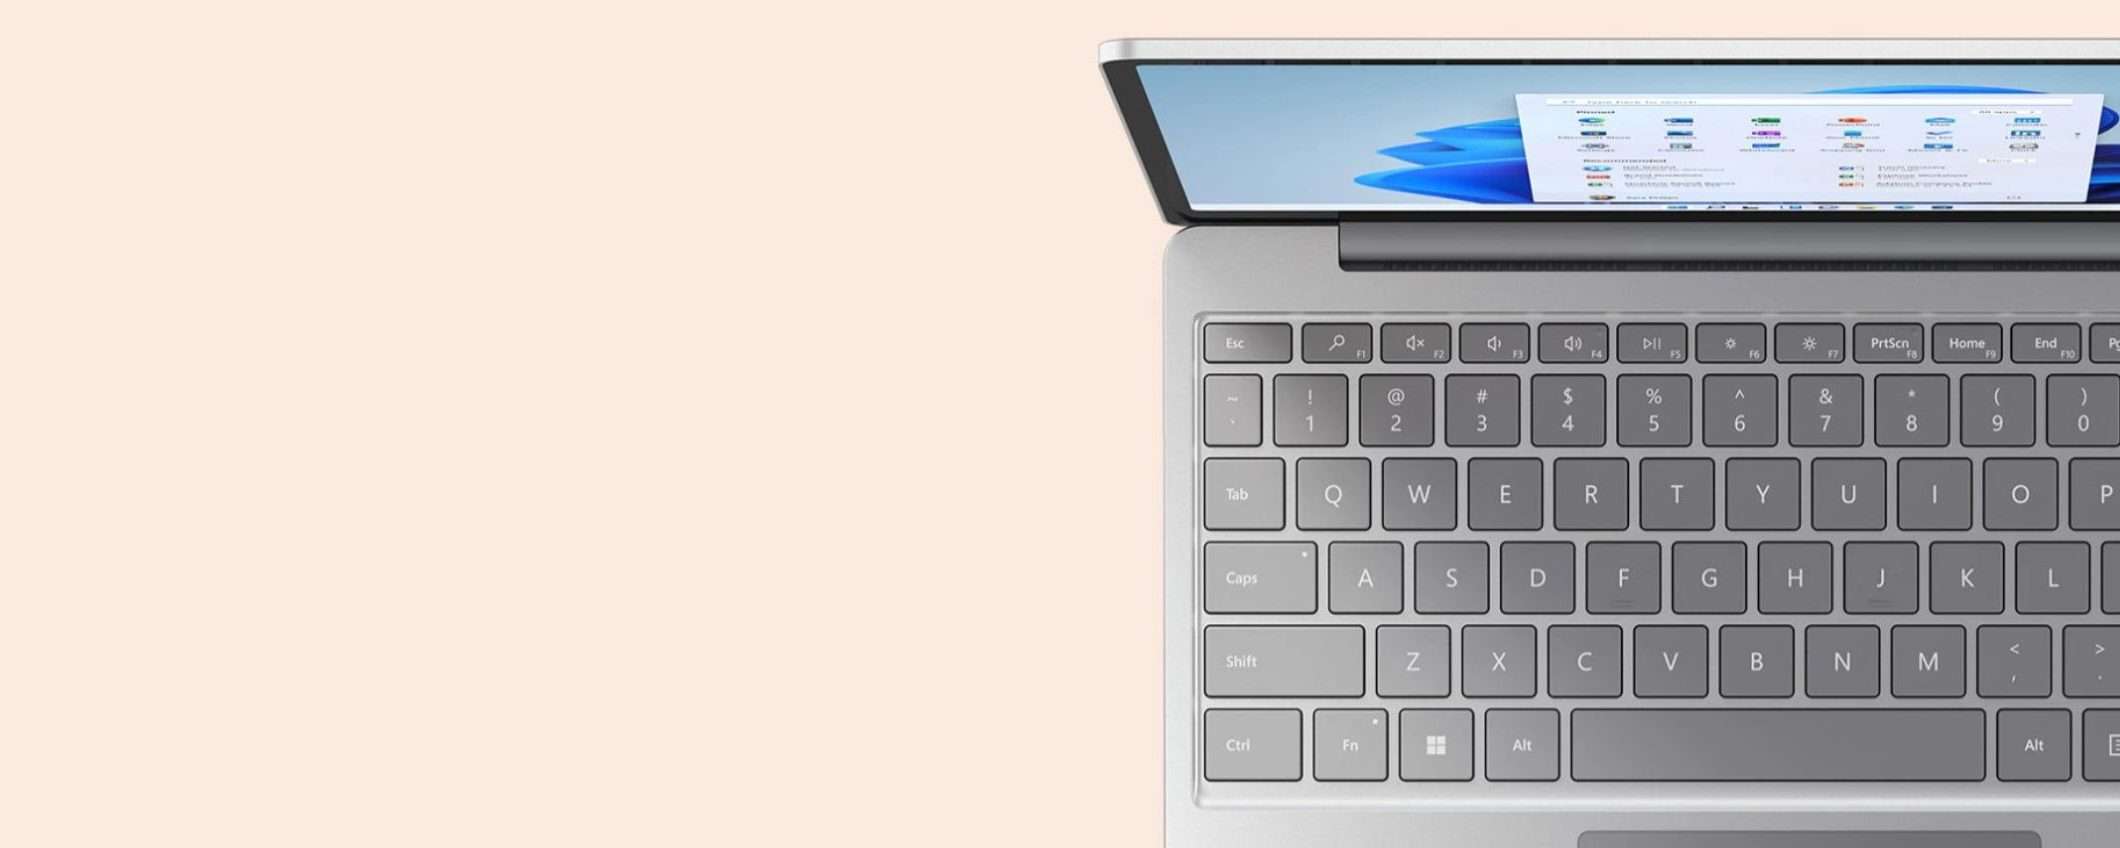 Microsoft Surface Laptop Go: occhio allo sconto, risparmi 250€ su Amazon